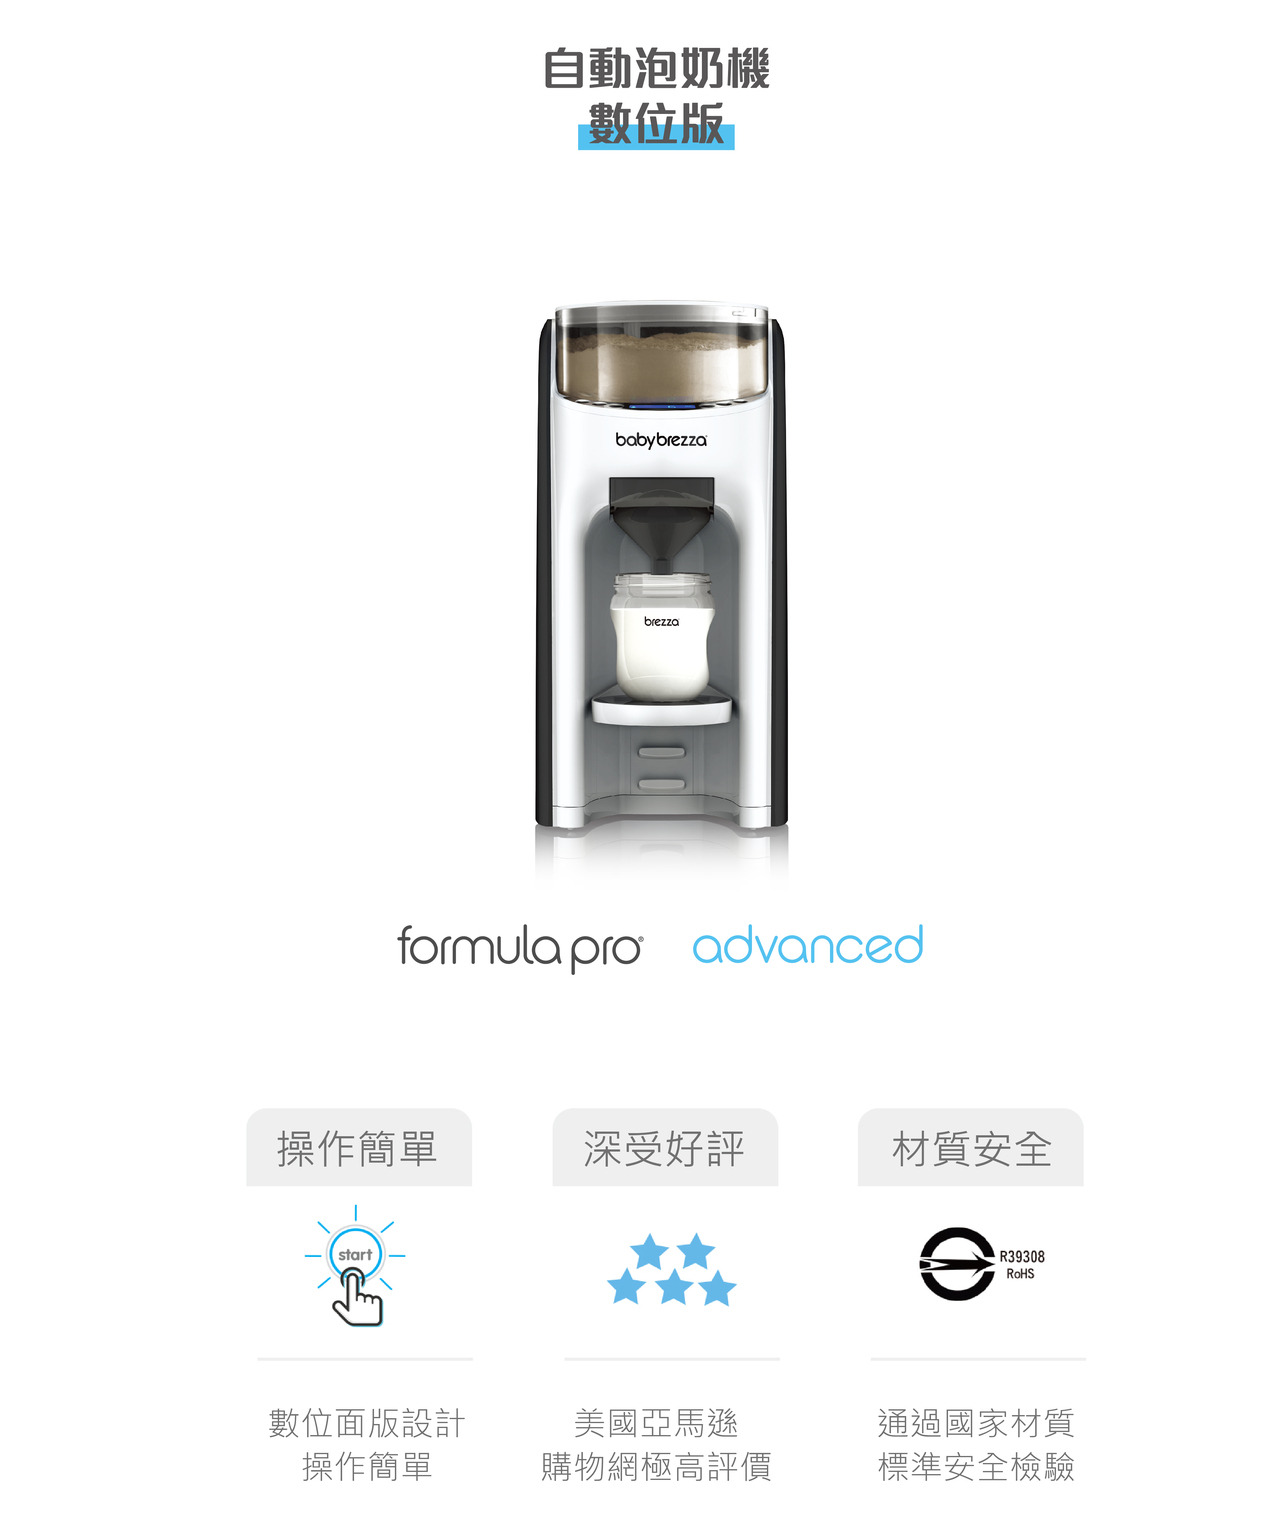 【愛吾兒】美國 baby brezza Formula Pro Advanced 自動泡奶機-數位版